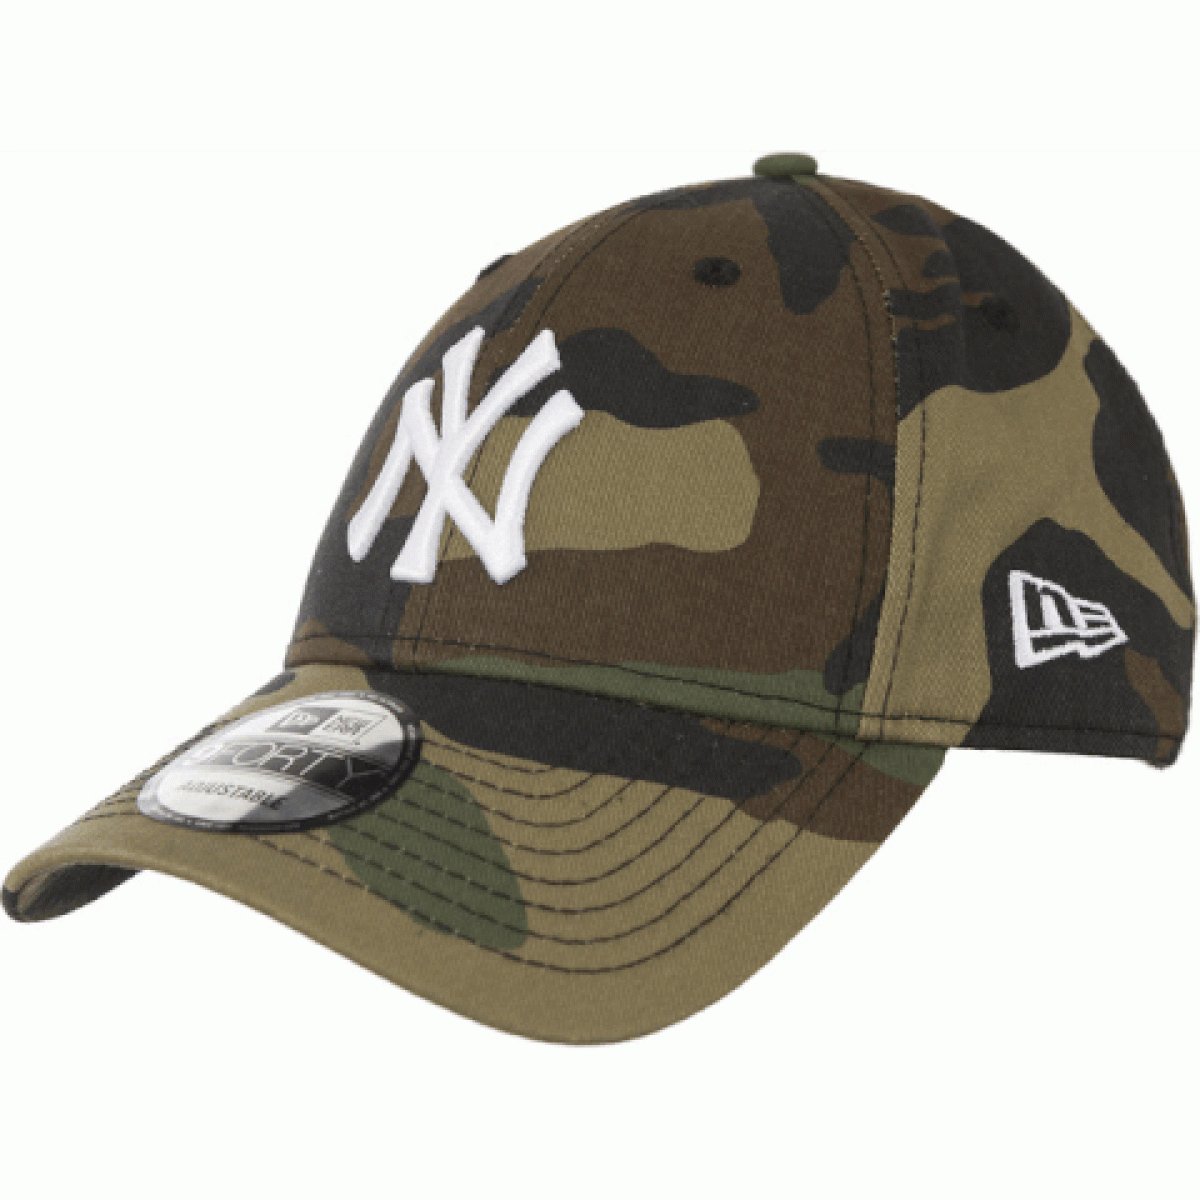 Mũ MLB new york yankees chính hãng - Cà Vạt, Phụ Kiện Nam - Thái Nguyên -  Nguồn Hàng Phụ Kiện Nam Việt Nam Xuất Khẩu Chất Lượng